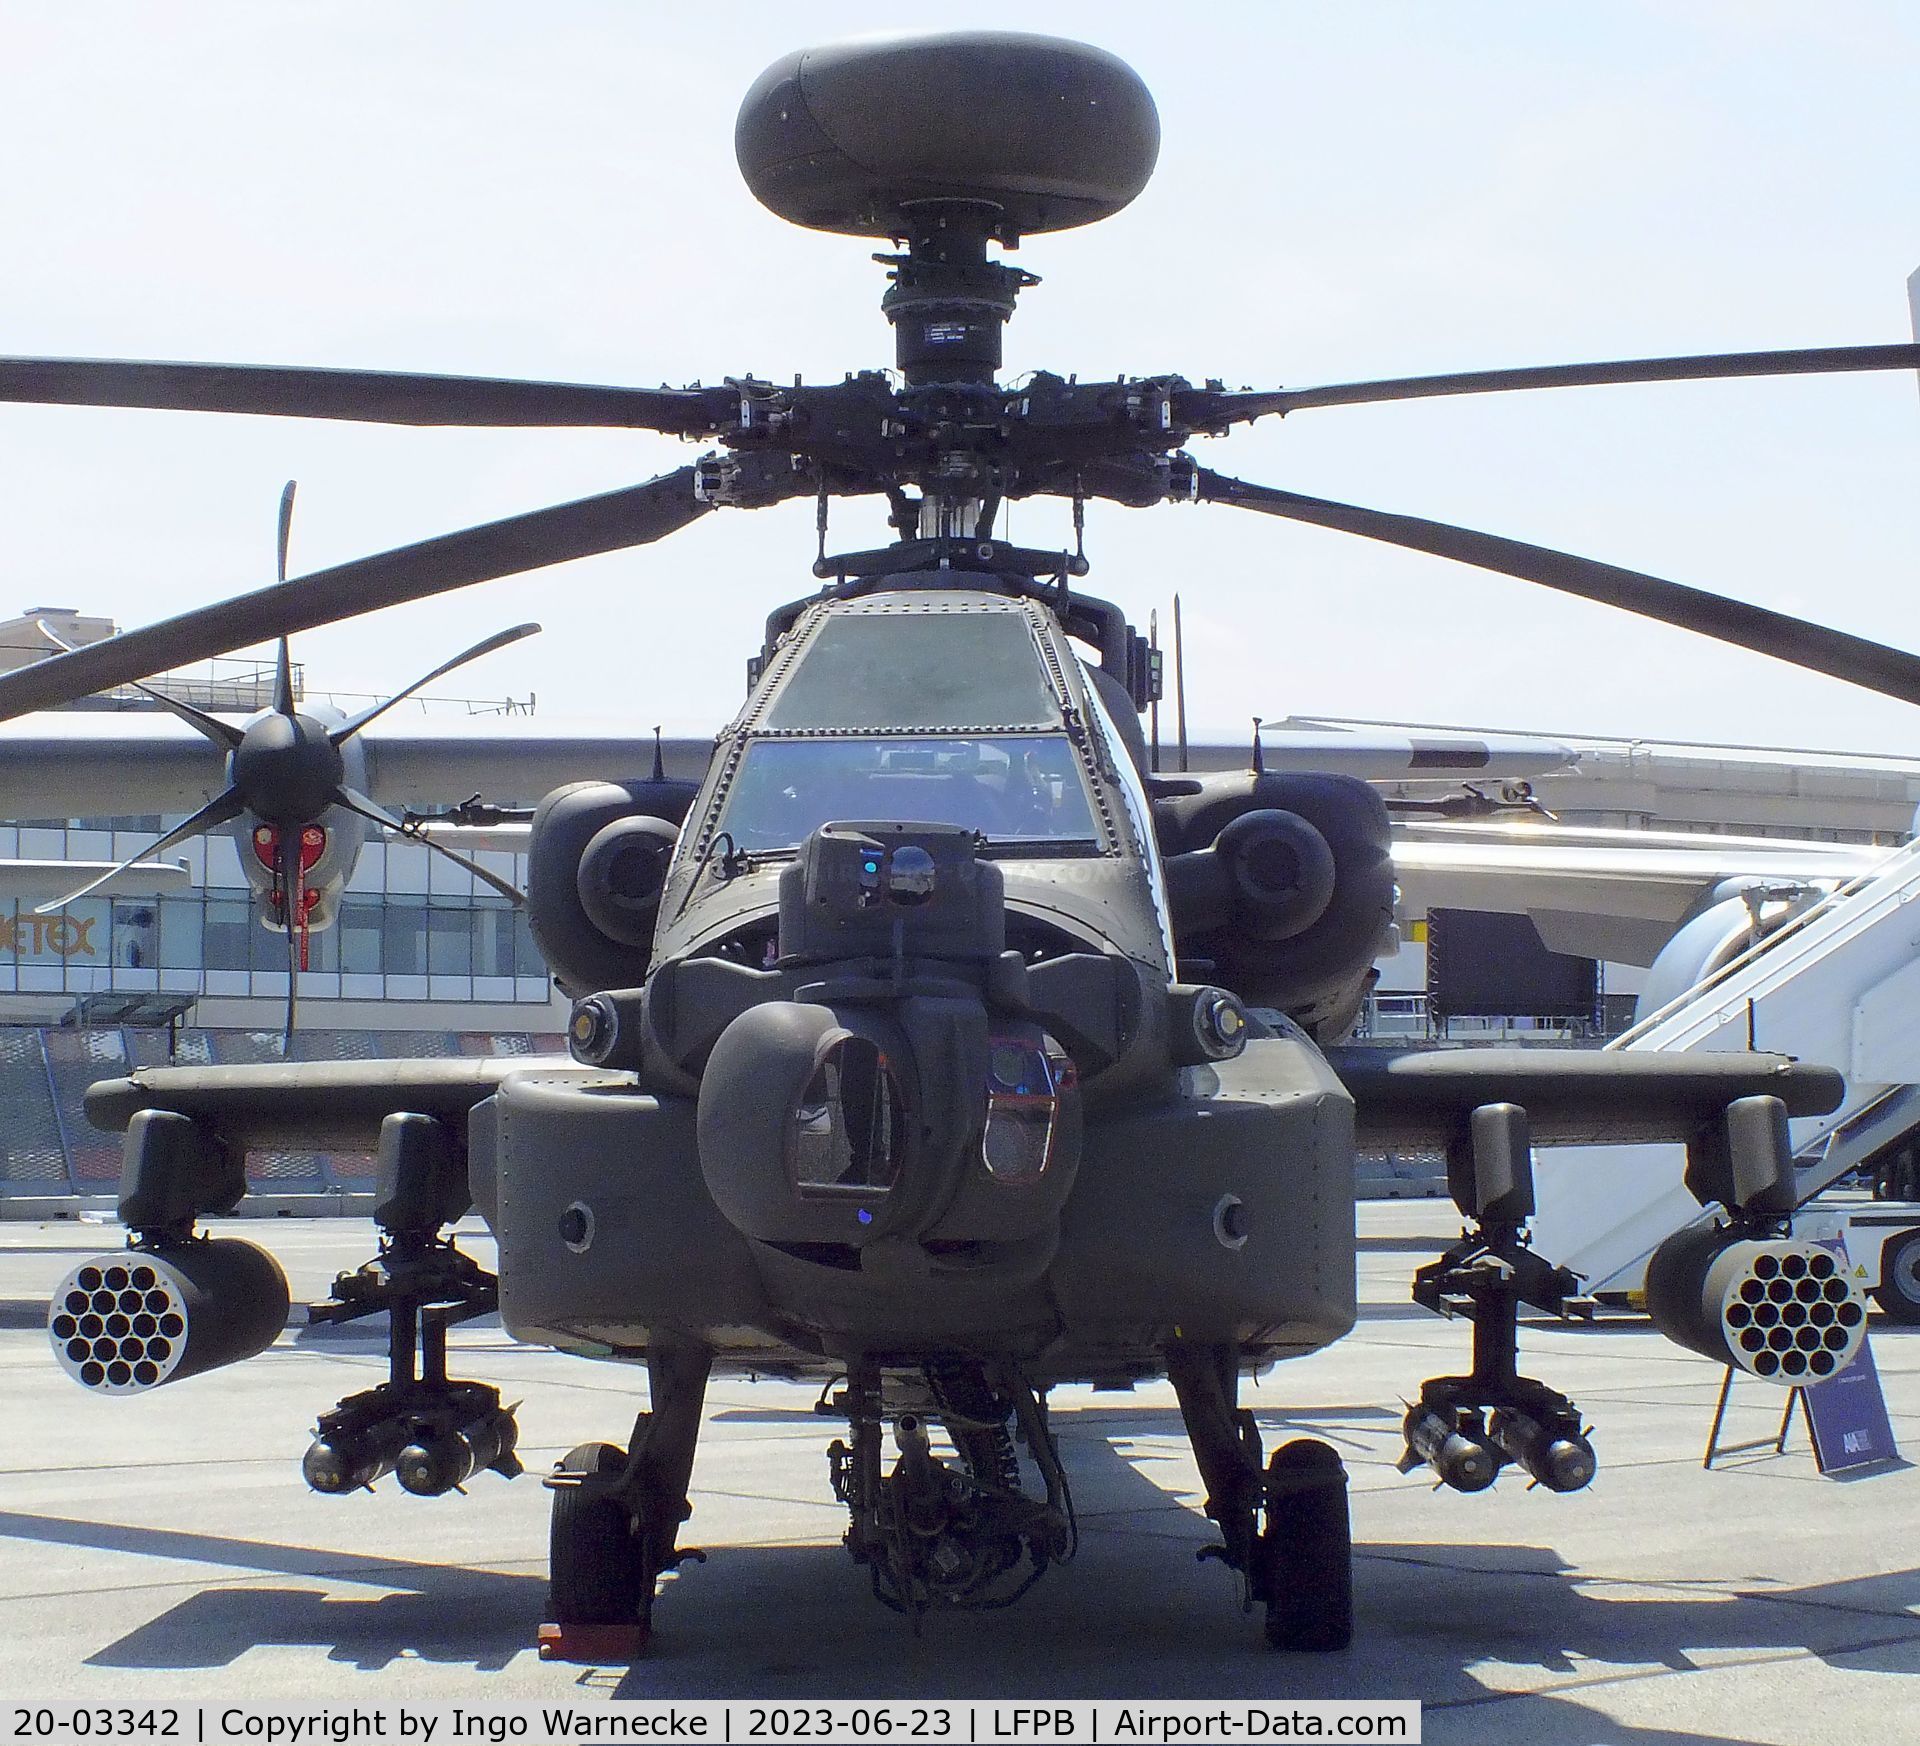 20-03342, 2020 Boeing AH-64E Apache Guardian C/N NM342, Boeing AH-64E Apache Guardian of the US Army at the Aerosalon 2023, Paris